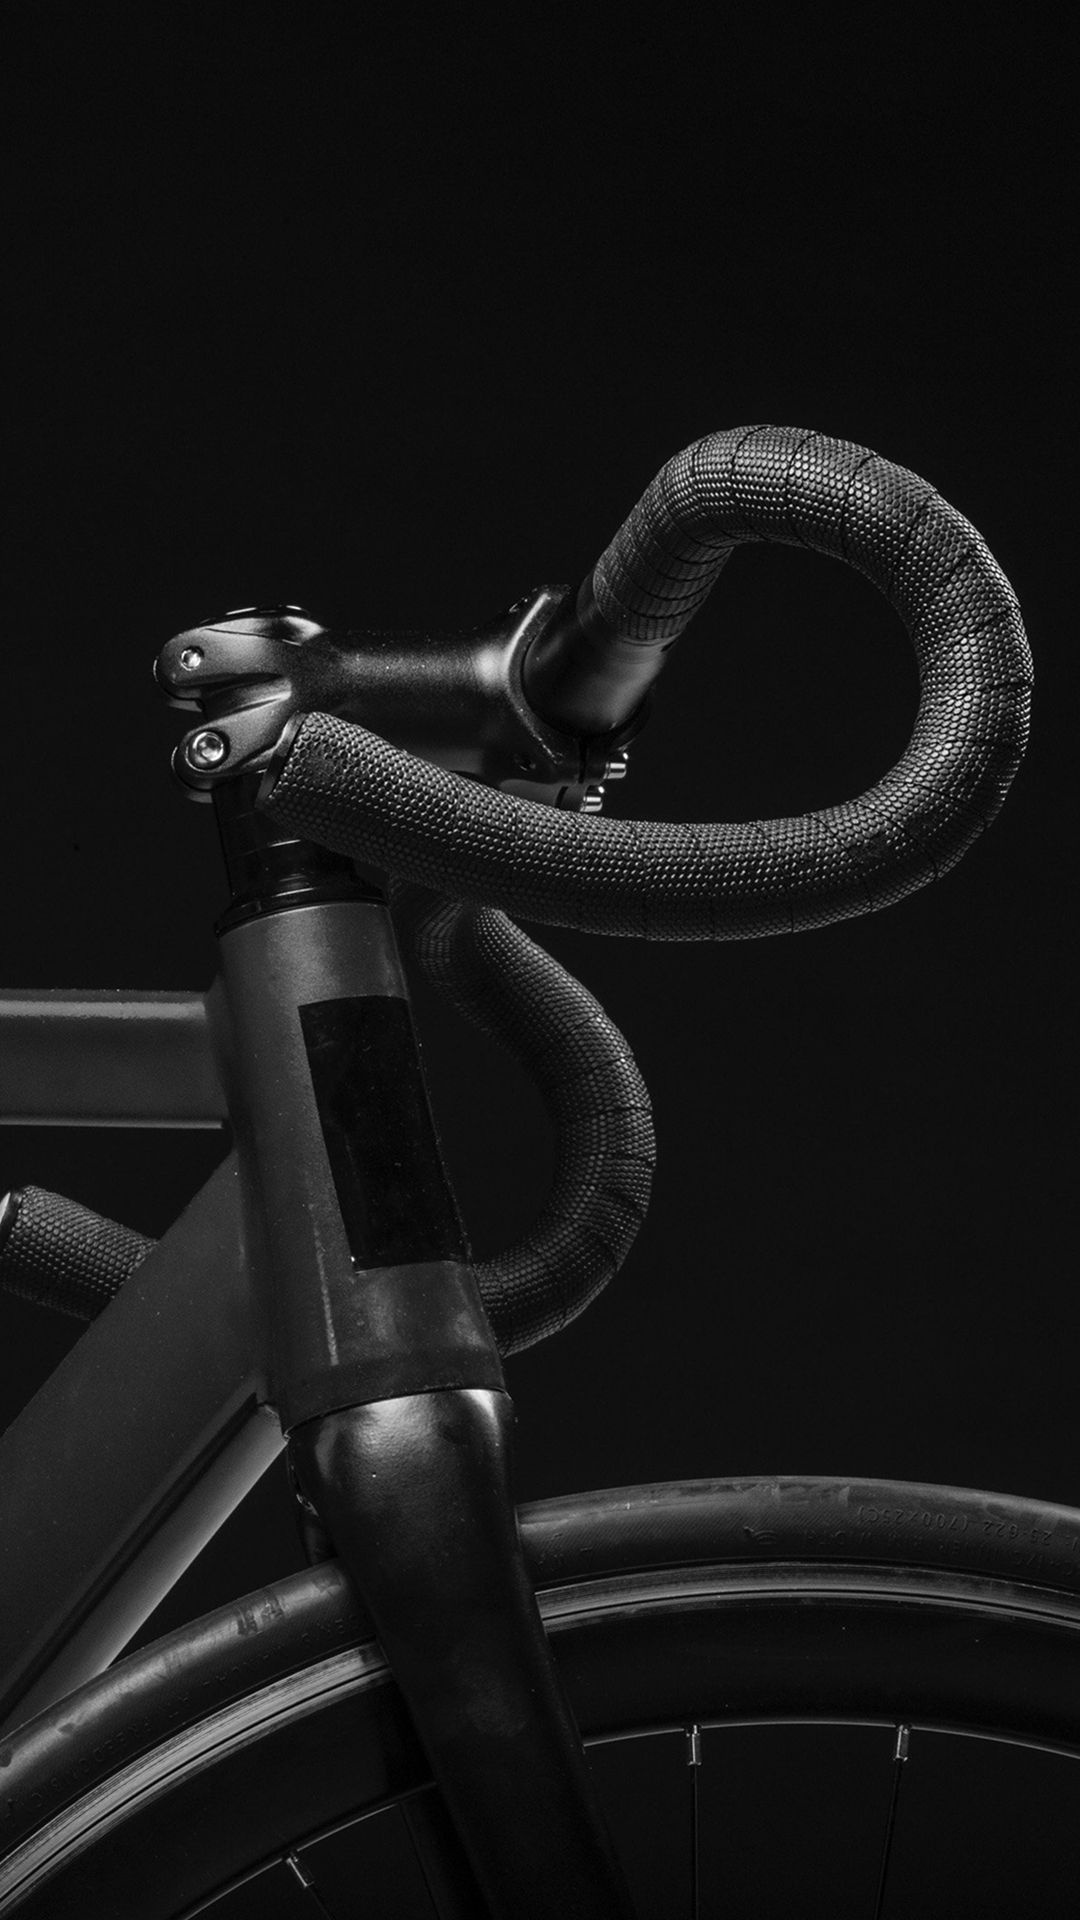 Trek Bikes, Dark minimal, Nature iPhone, Bike photography, 1080x1920 Full HD Phone